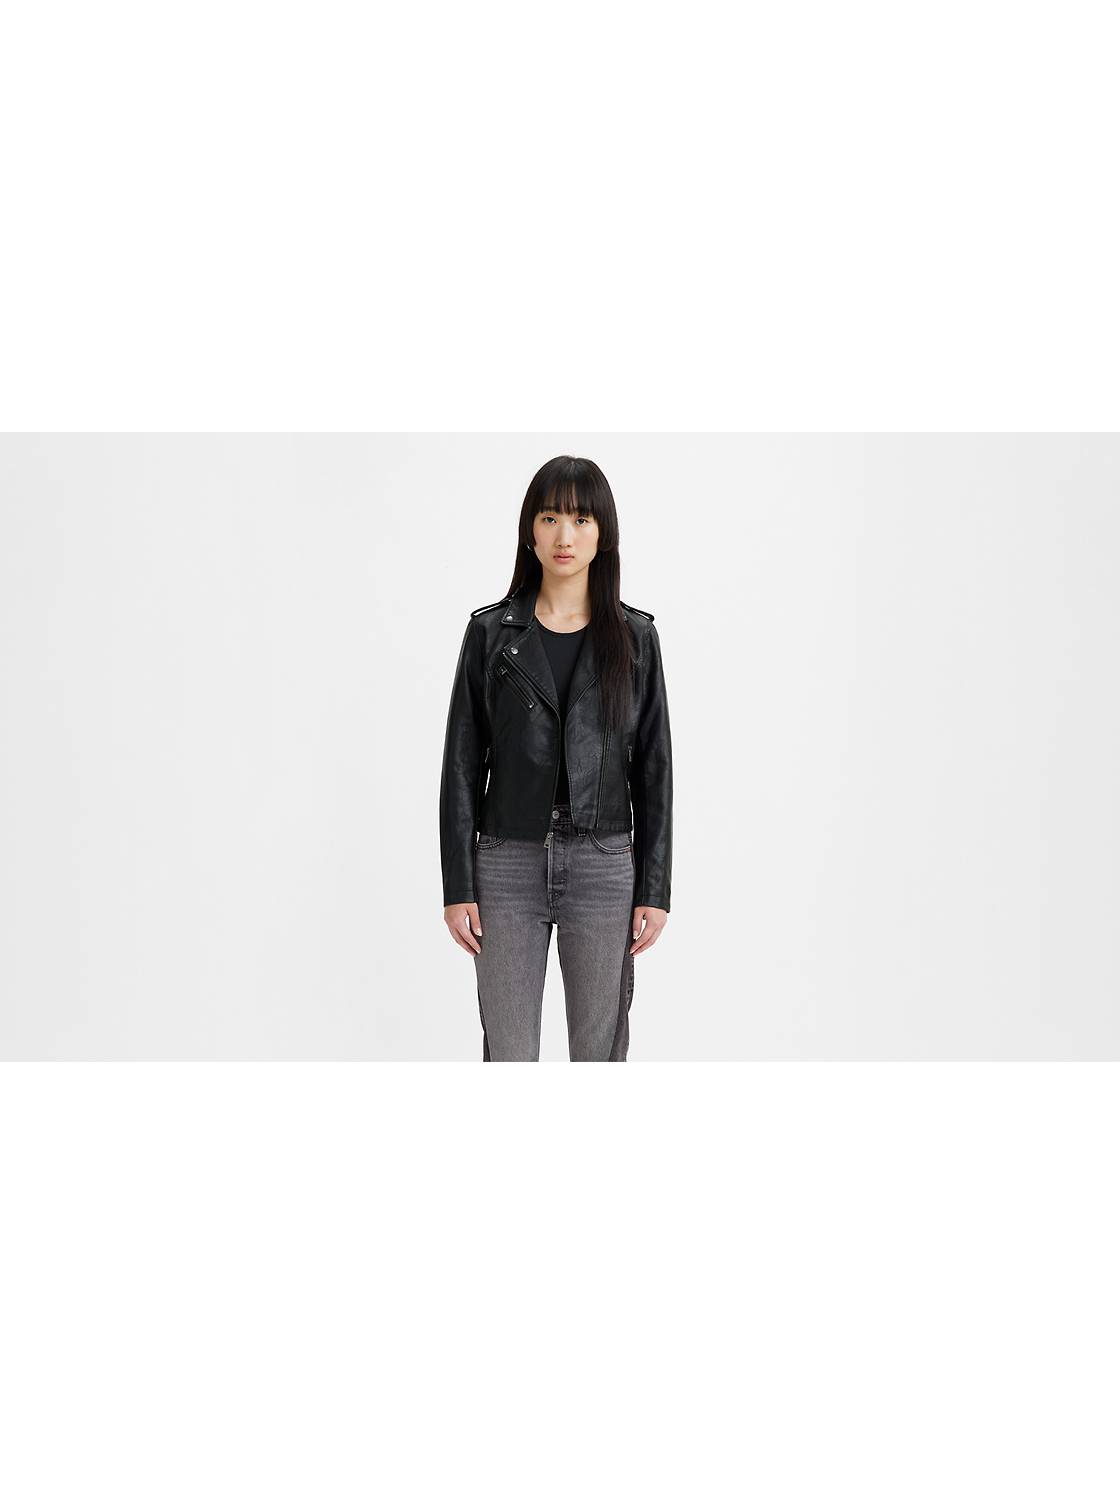 Jean Jackets - Shop Women's Denim Jackets & Outerwear | Levi's® CA